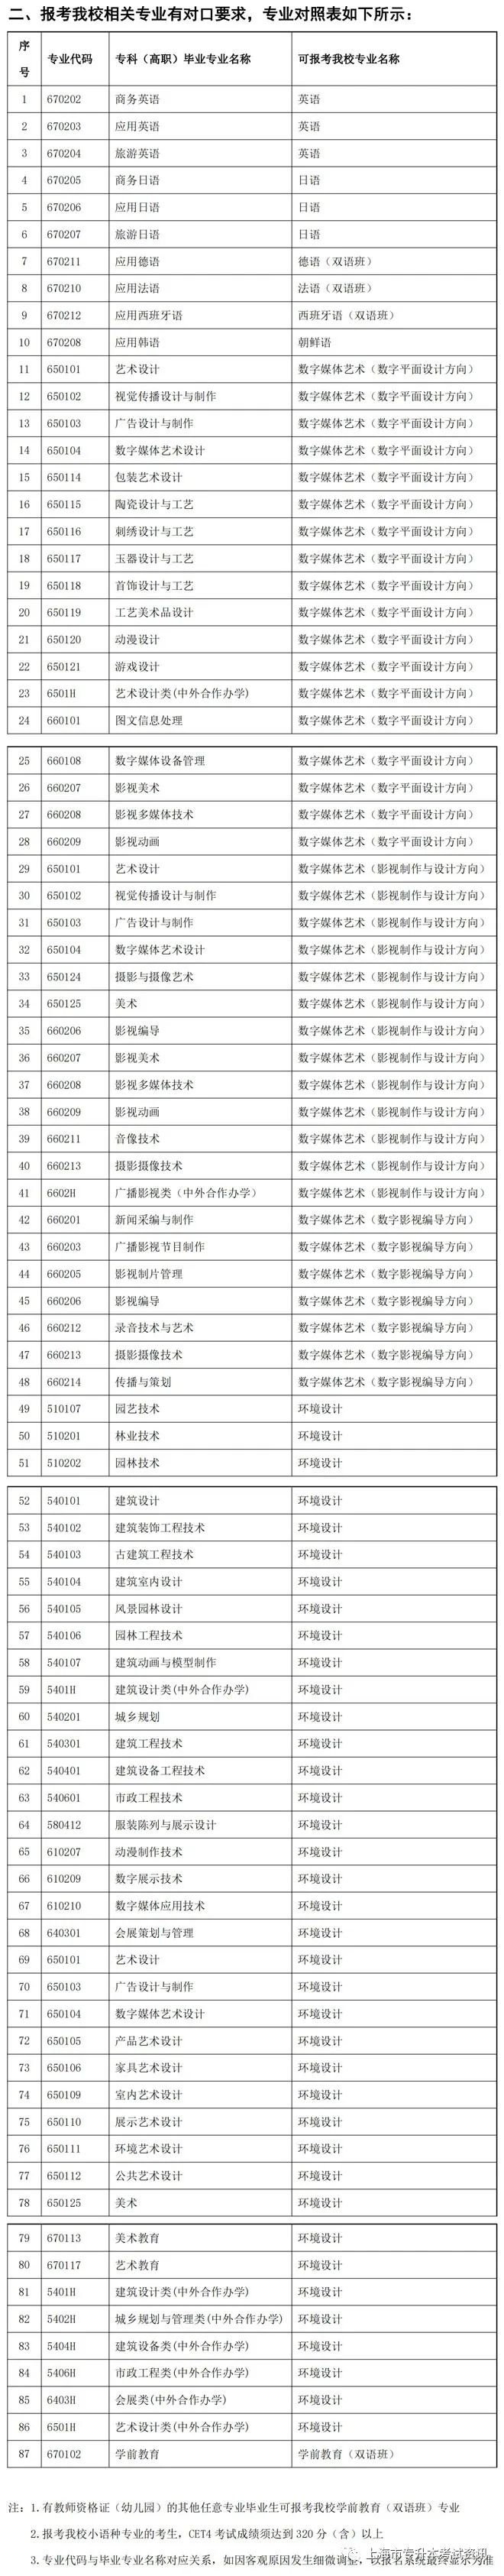 2022年上海各高校专升本专业对照表